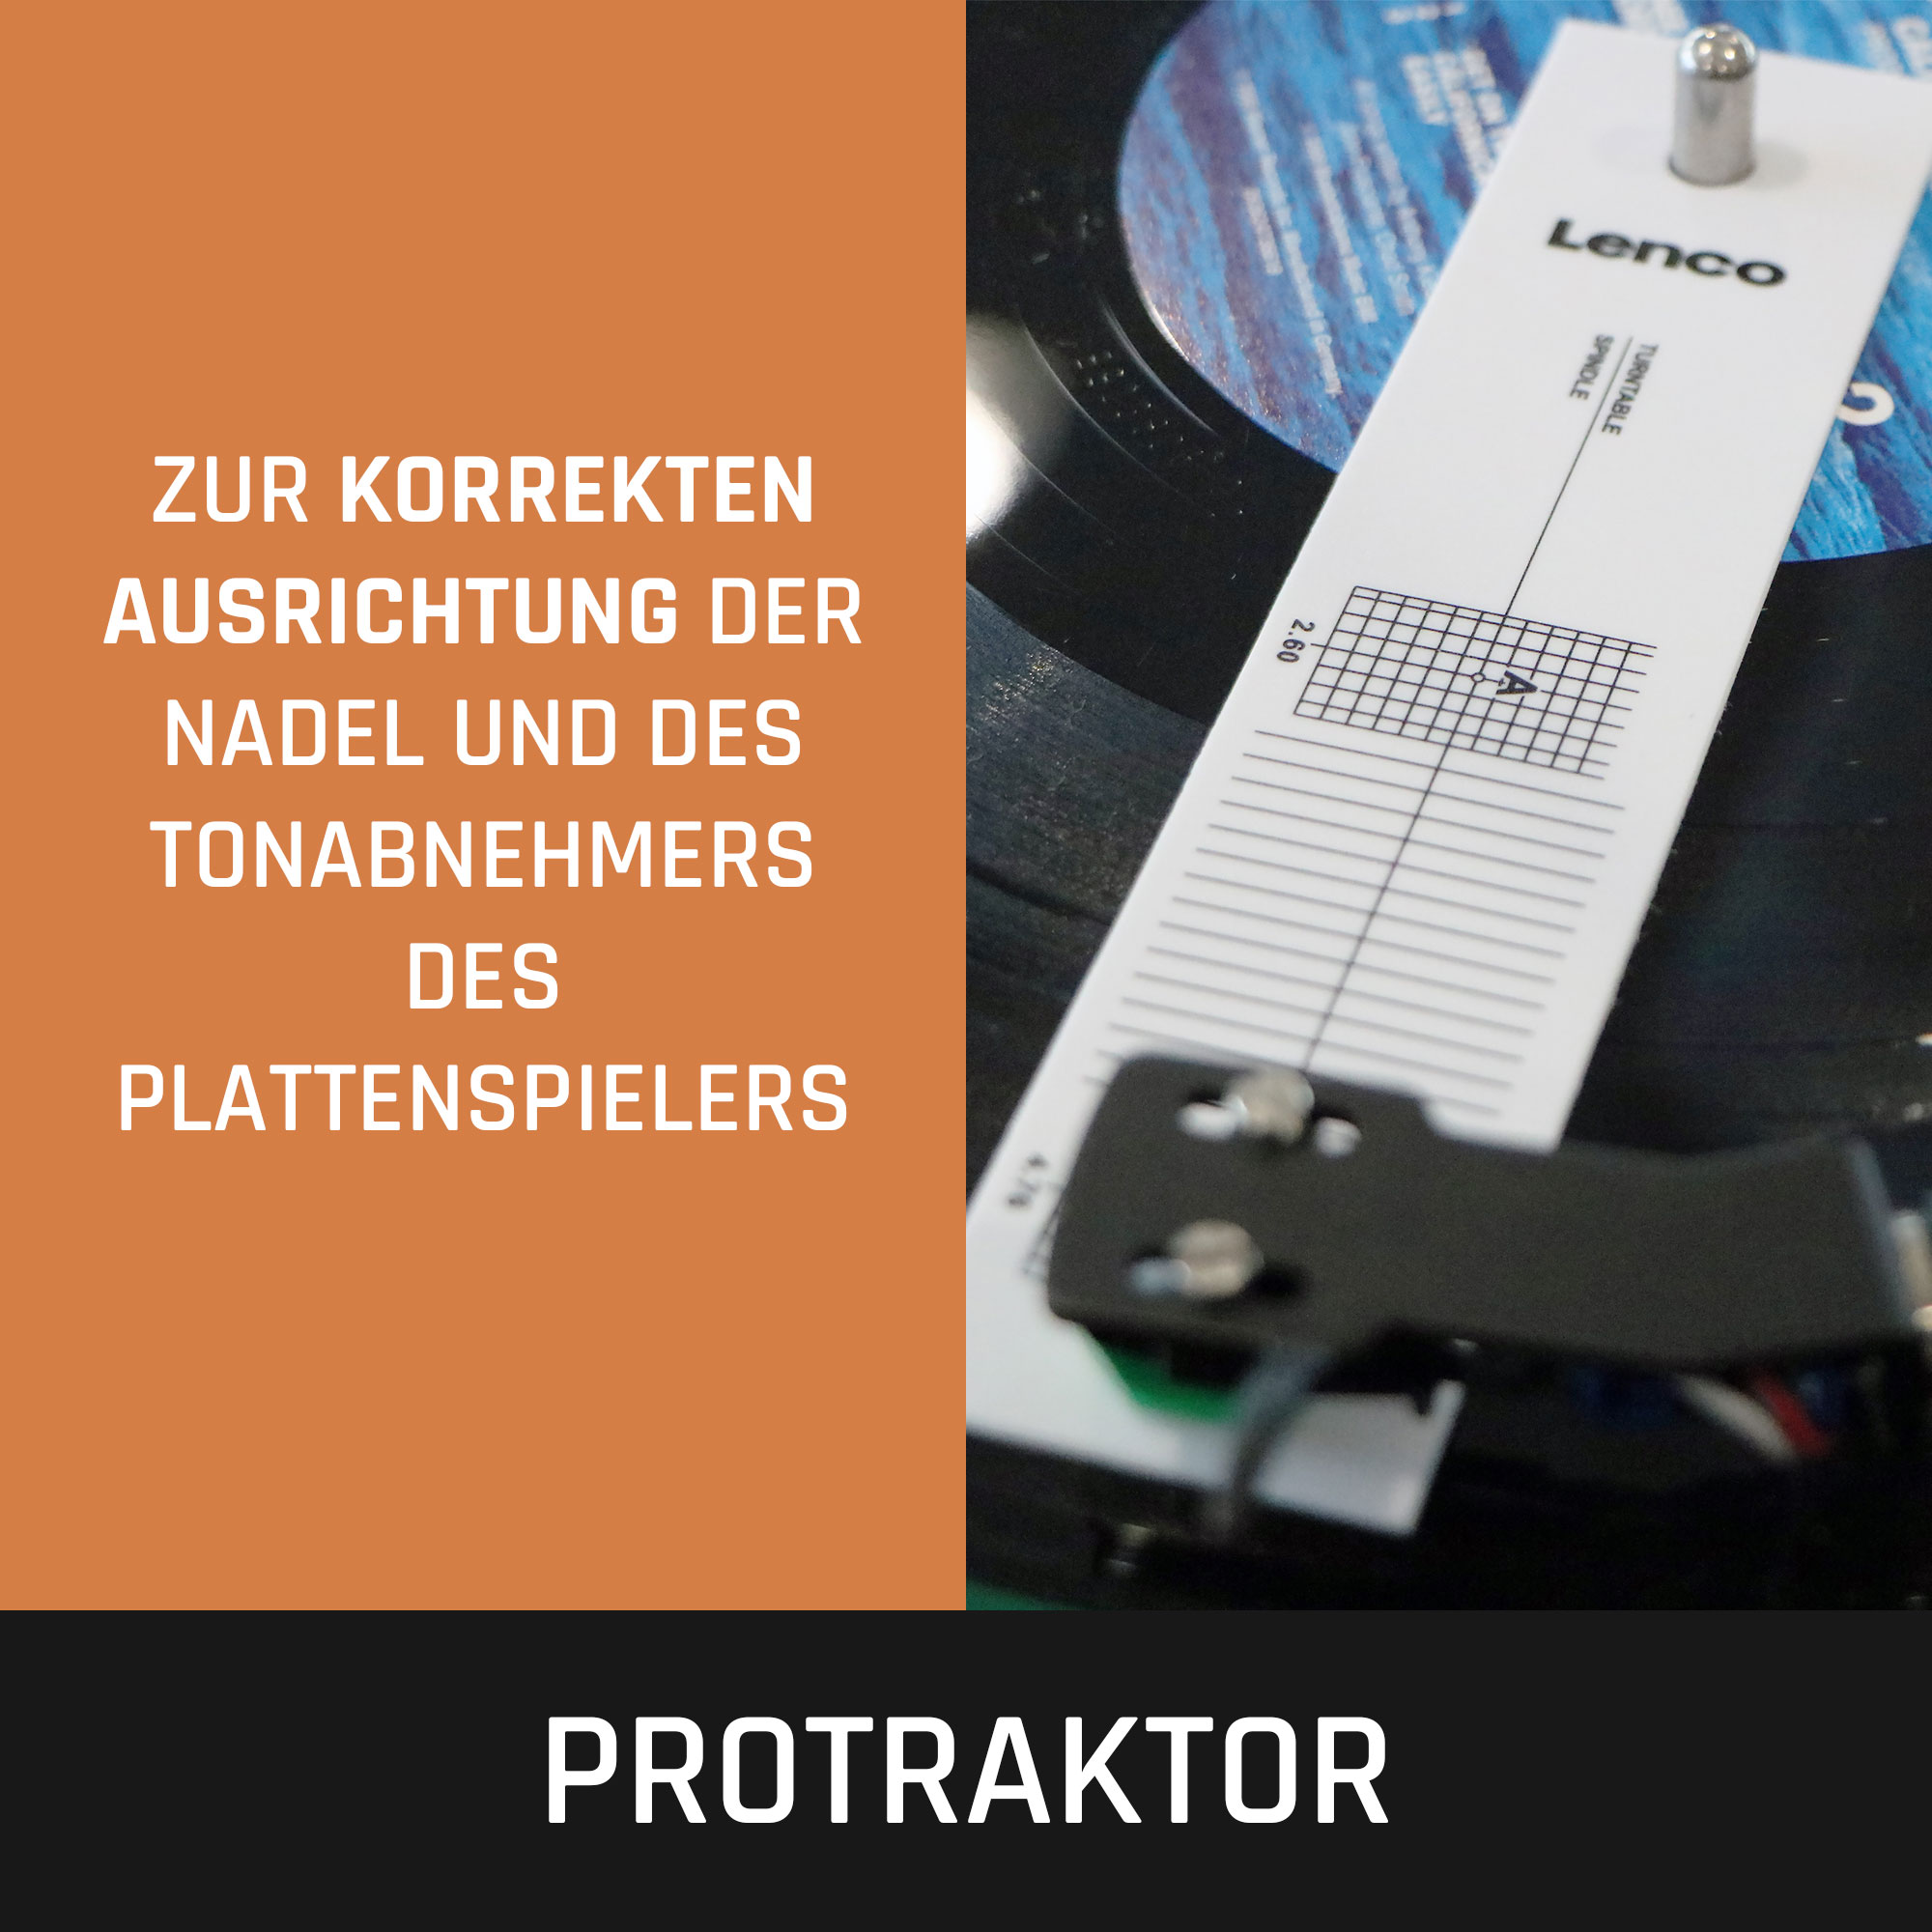 6-in-1 Deluxe-Set LENCO - Reiniger Schallplatten Plattenspieler-Zubehörset für und TTA-6IN1 Schallplattenreinigung -